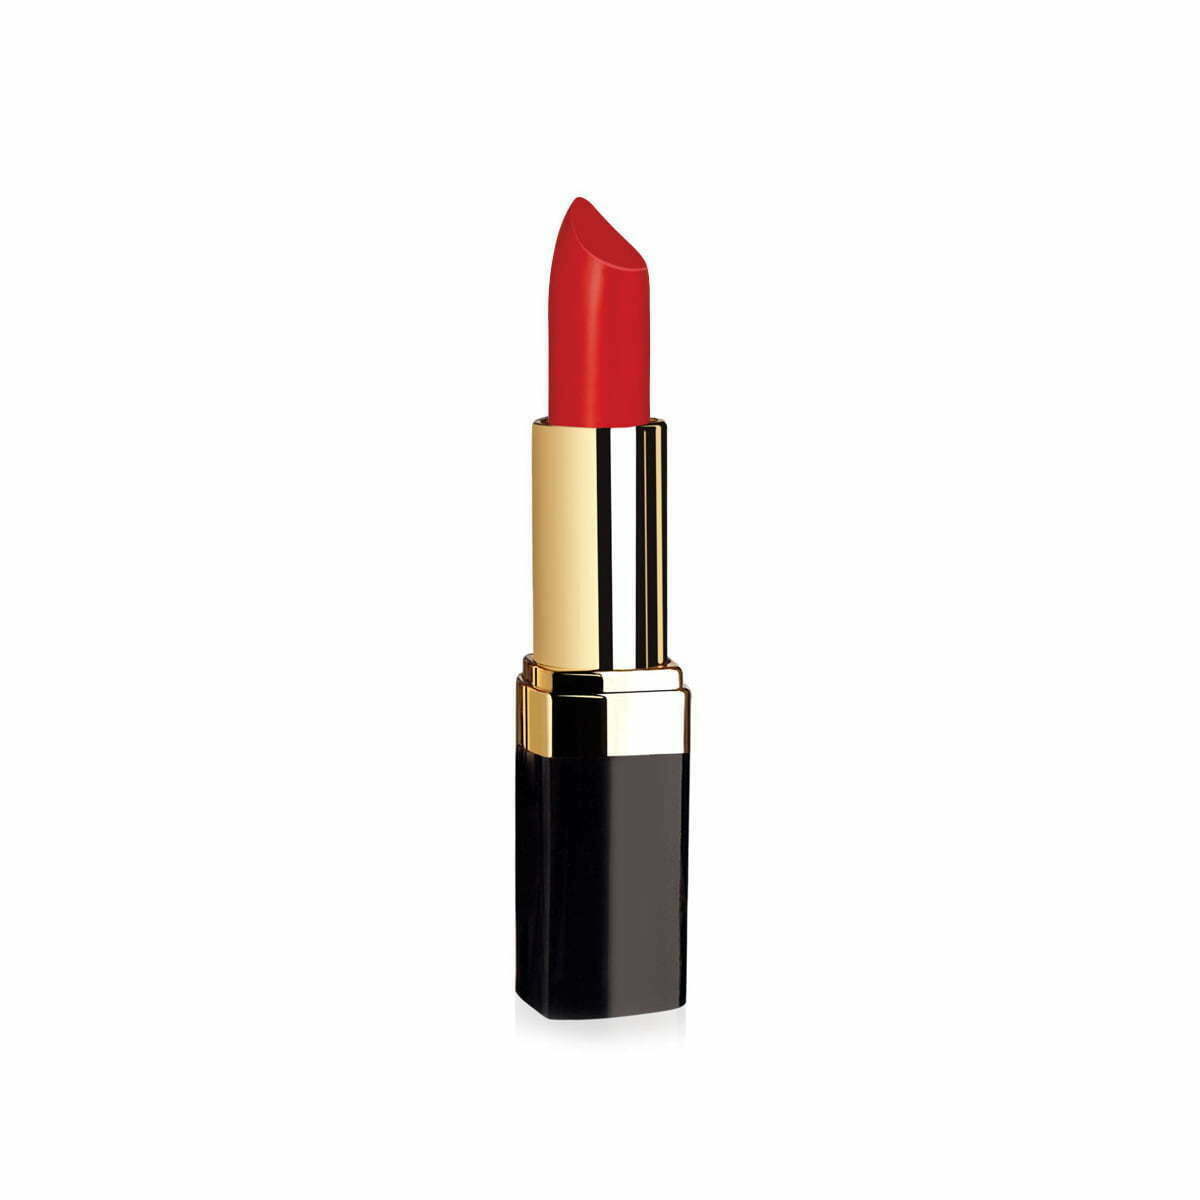 Golden Rose Lipstick Vitamin E (4.2gm)